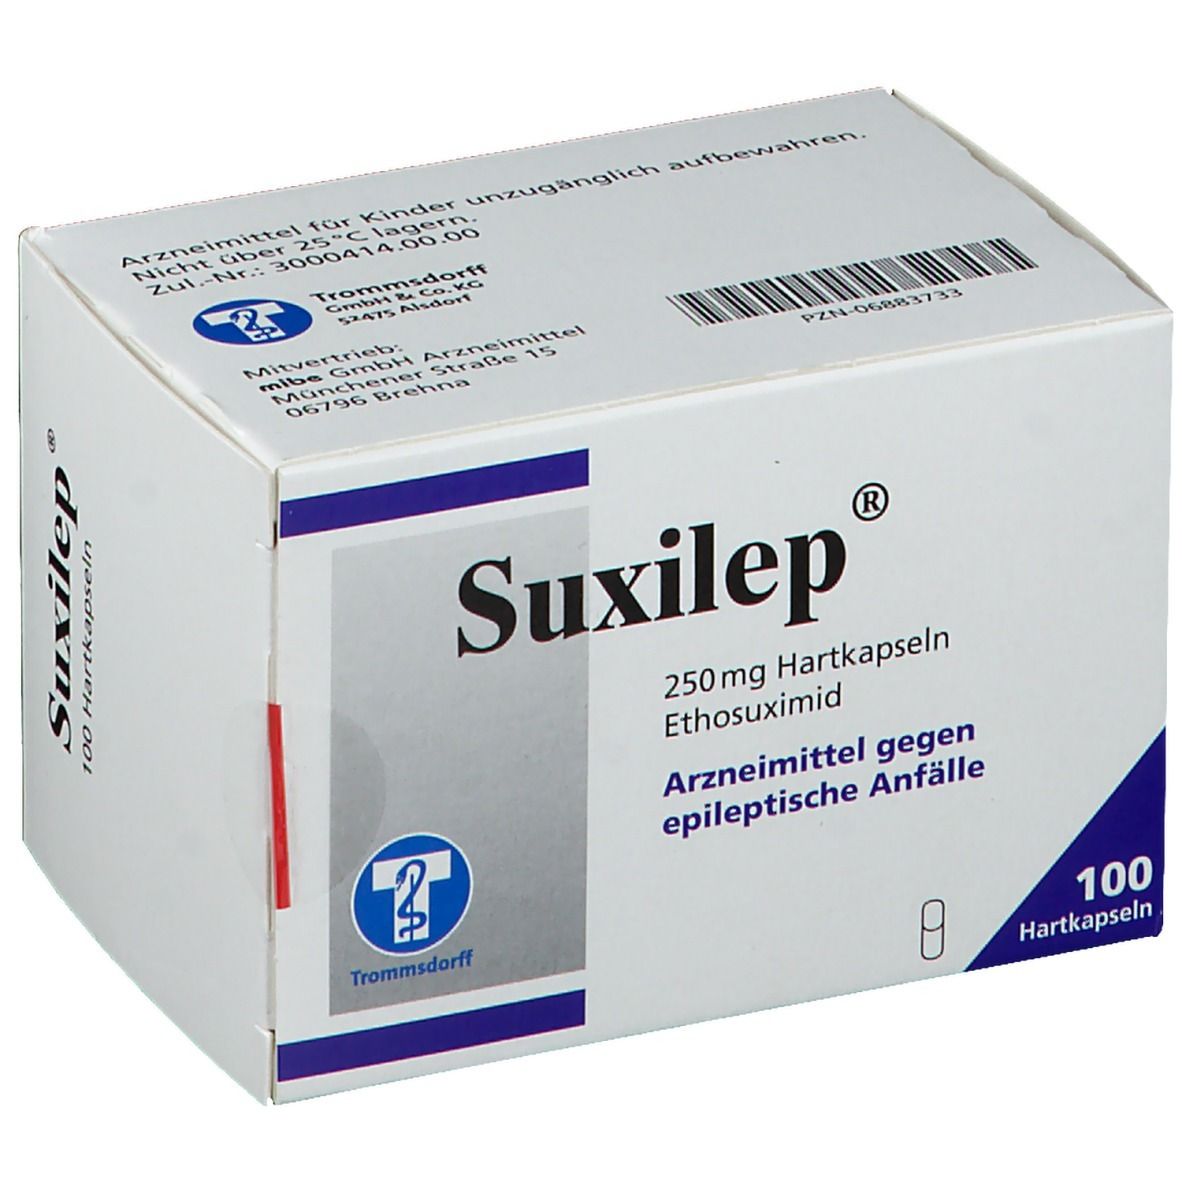 Suxilep® 250 mg